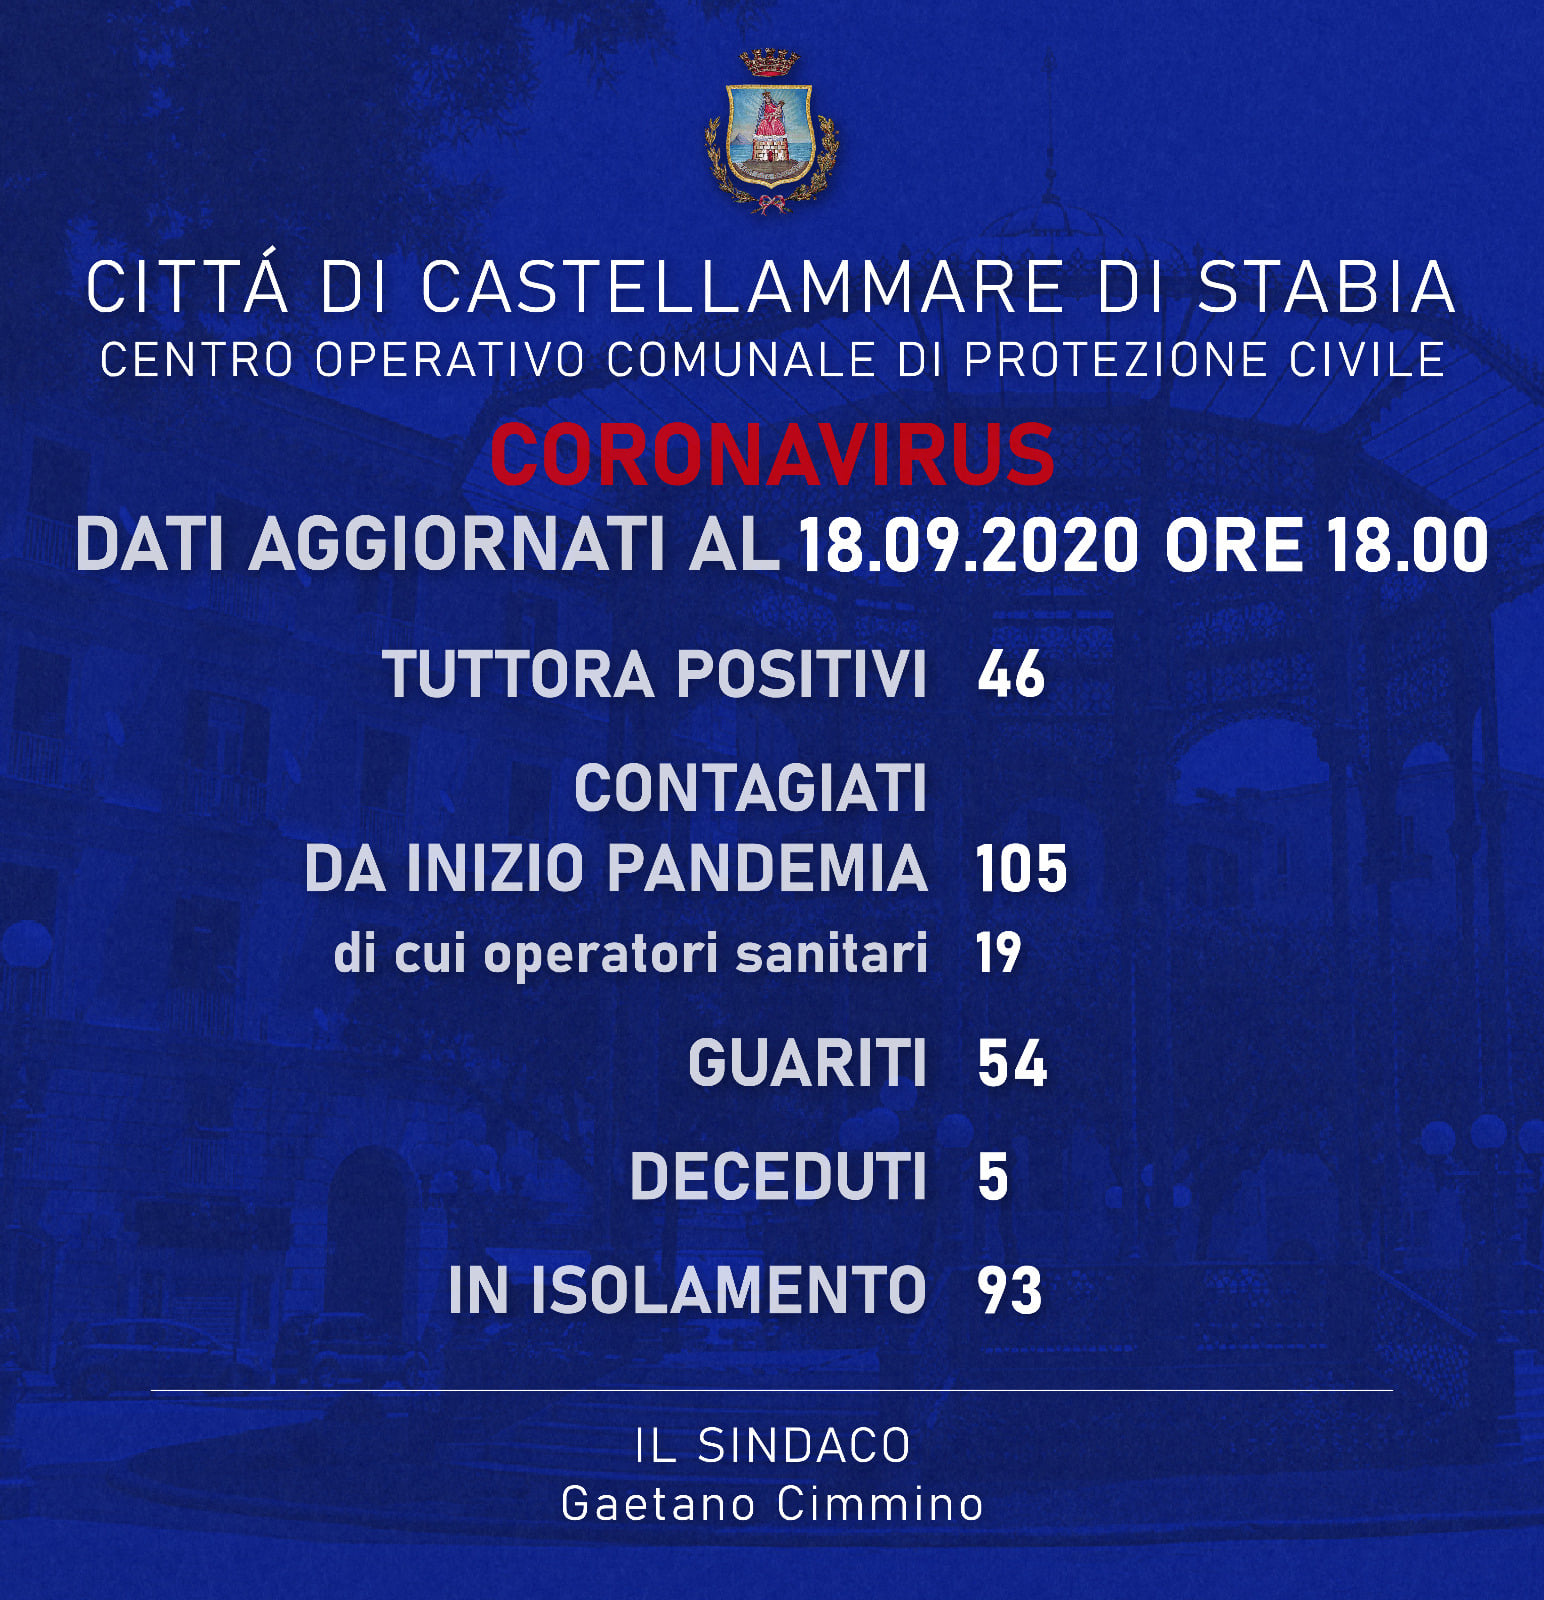 L’Asl ci ha comunicato che altri 2 cittadini di Castellammare di Stabia sono risultati positivi al Covid-19.